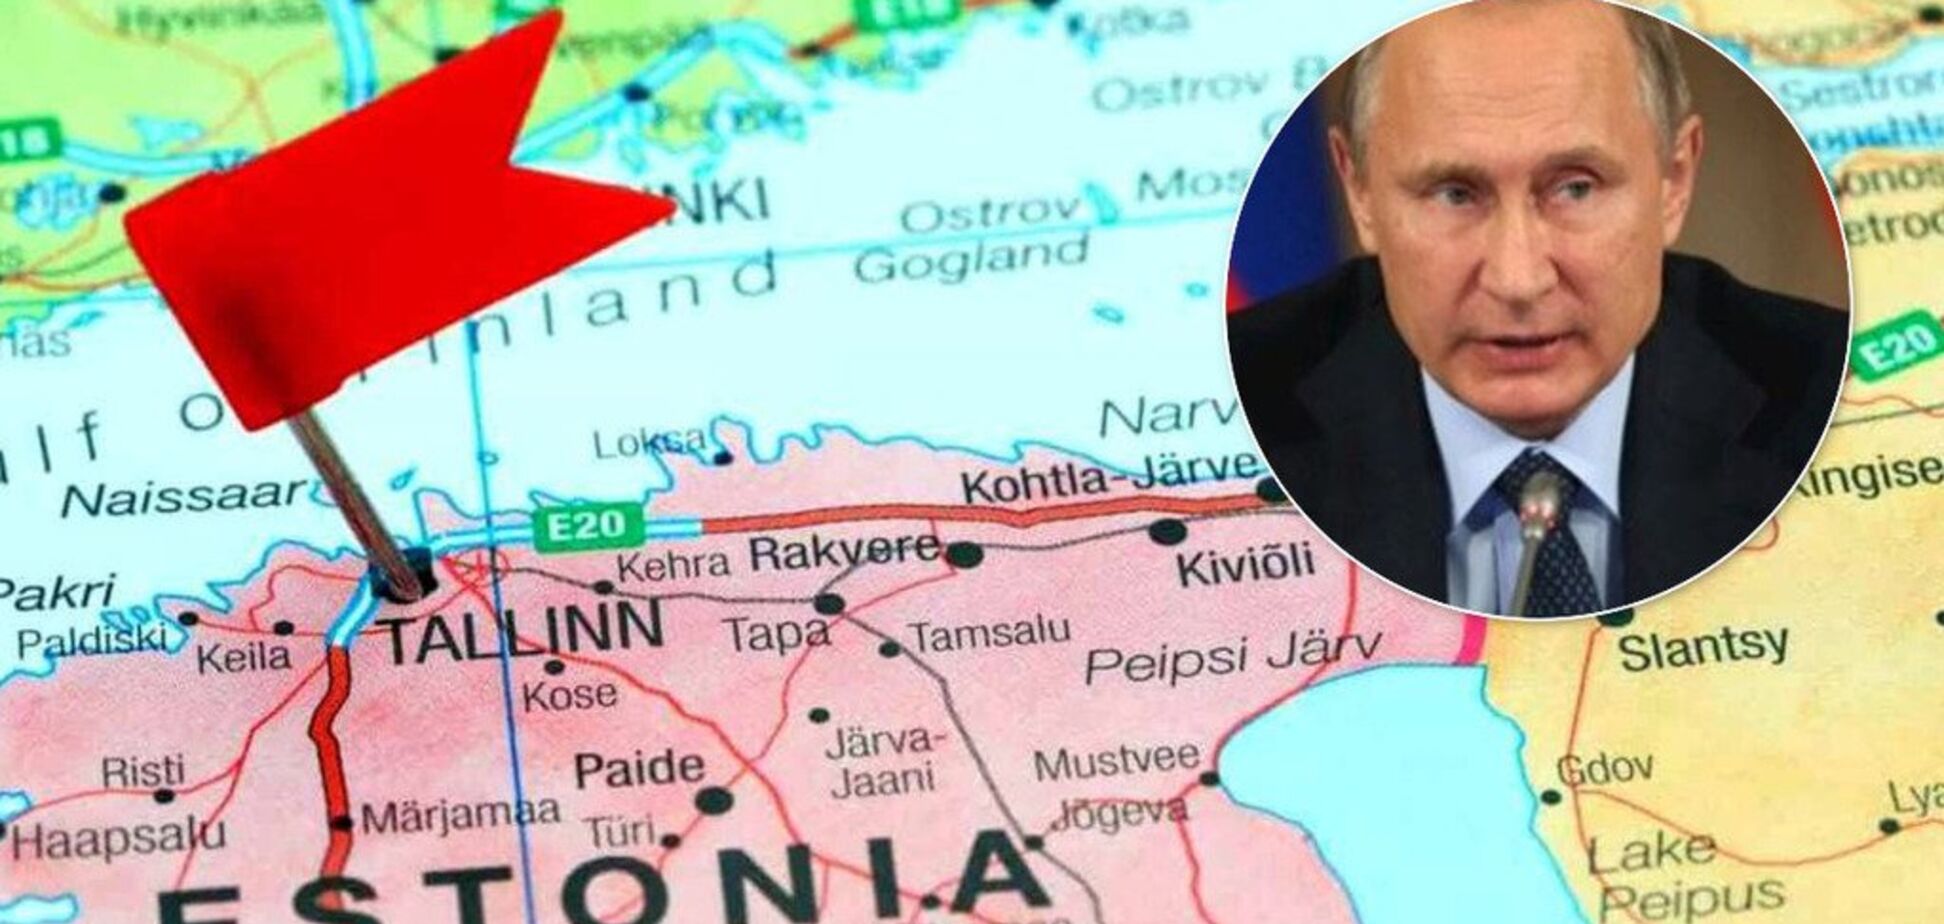 Естонія зажадала в Росії віддати частину двох областей: чому й до чого призведе